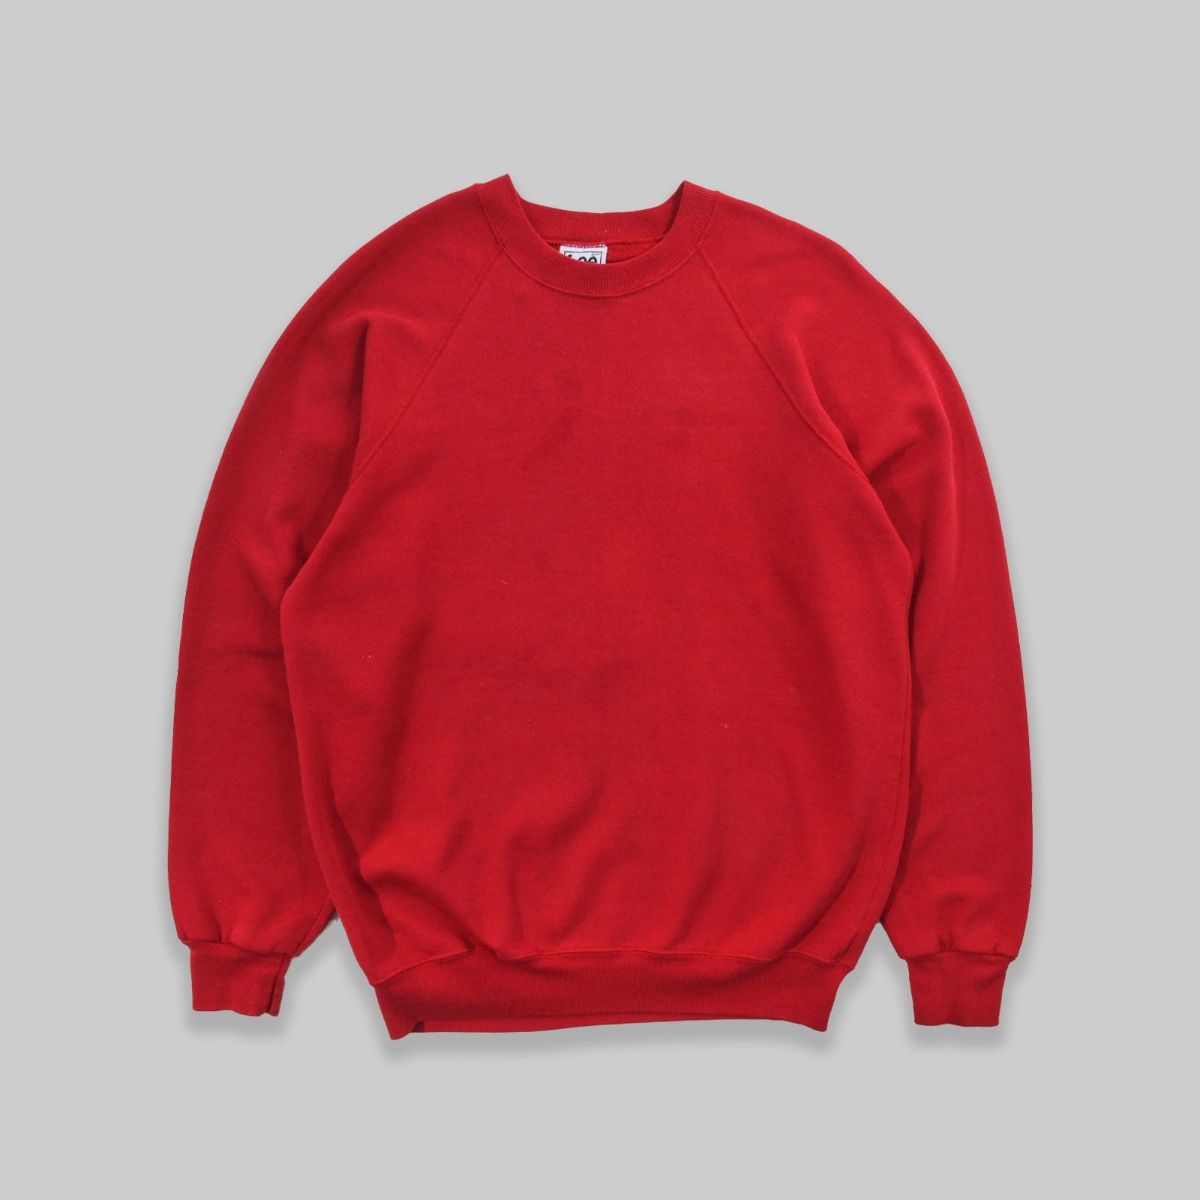 Lee 1990s Blank Red Sweatshirt